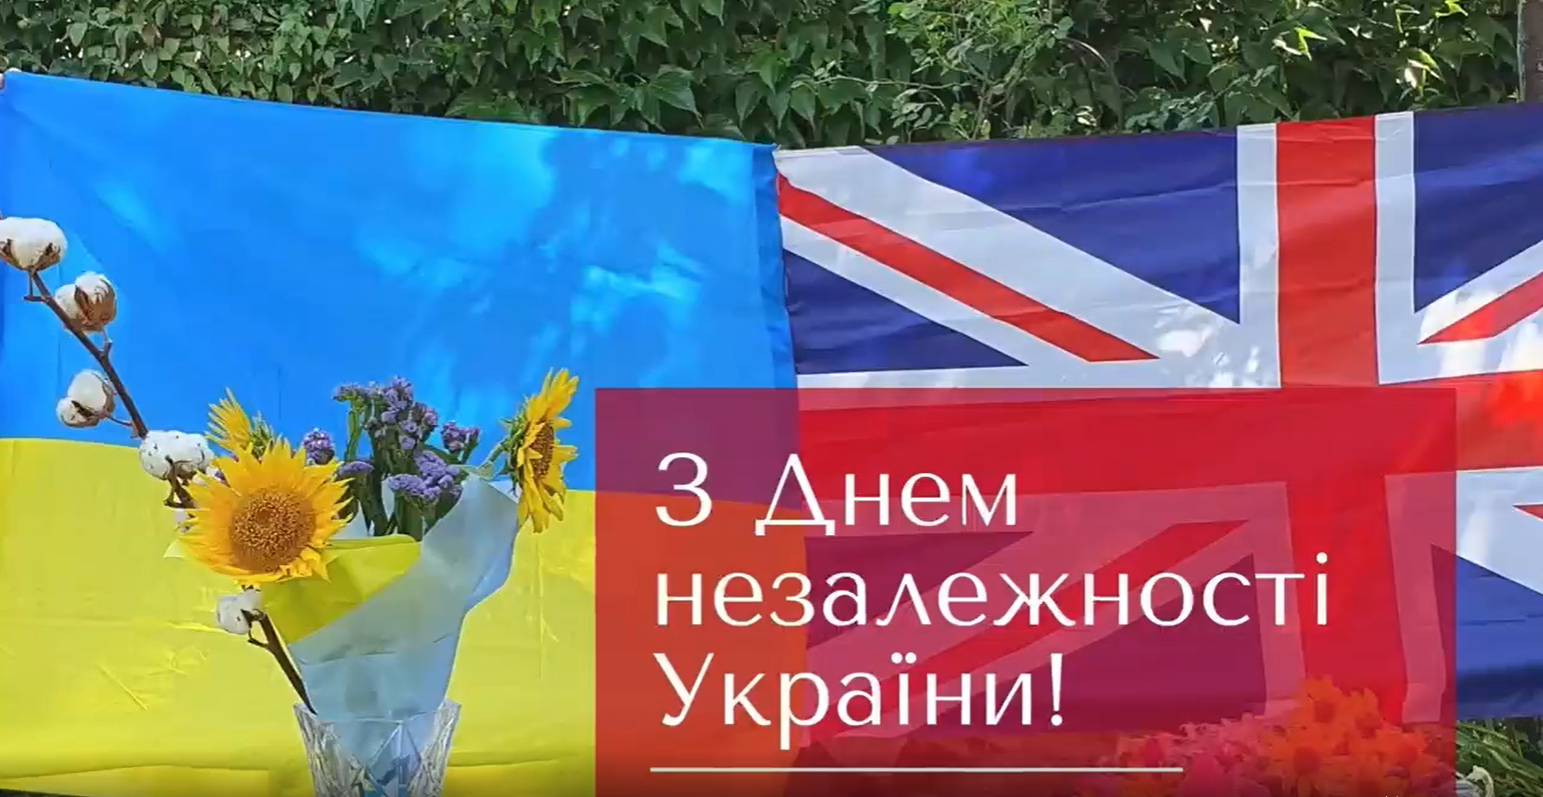 Посол Британії в Україні склала букет із соняшниками та бавовною, вітаючи українців з Днем Незалежності. Відео 